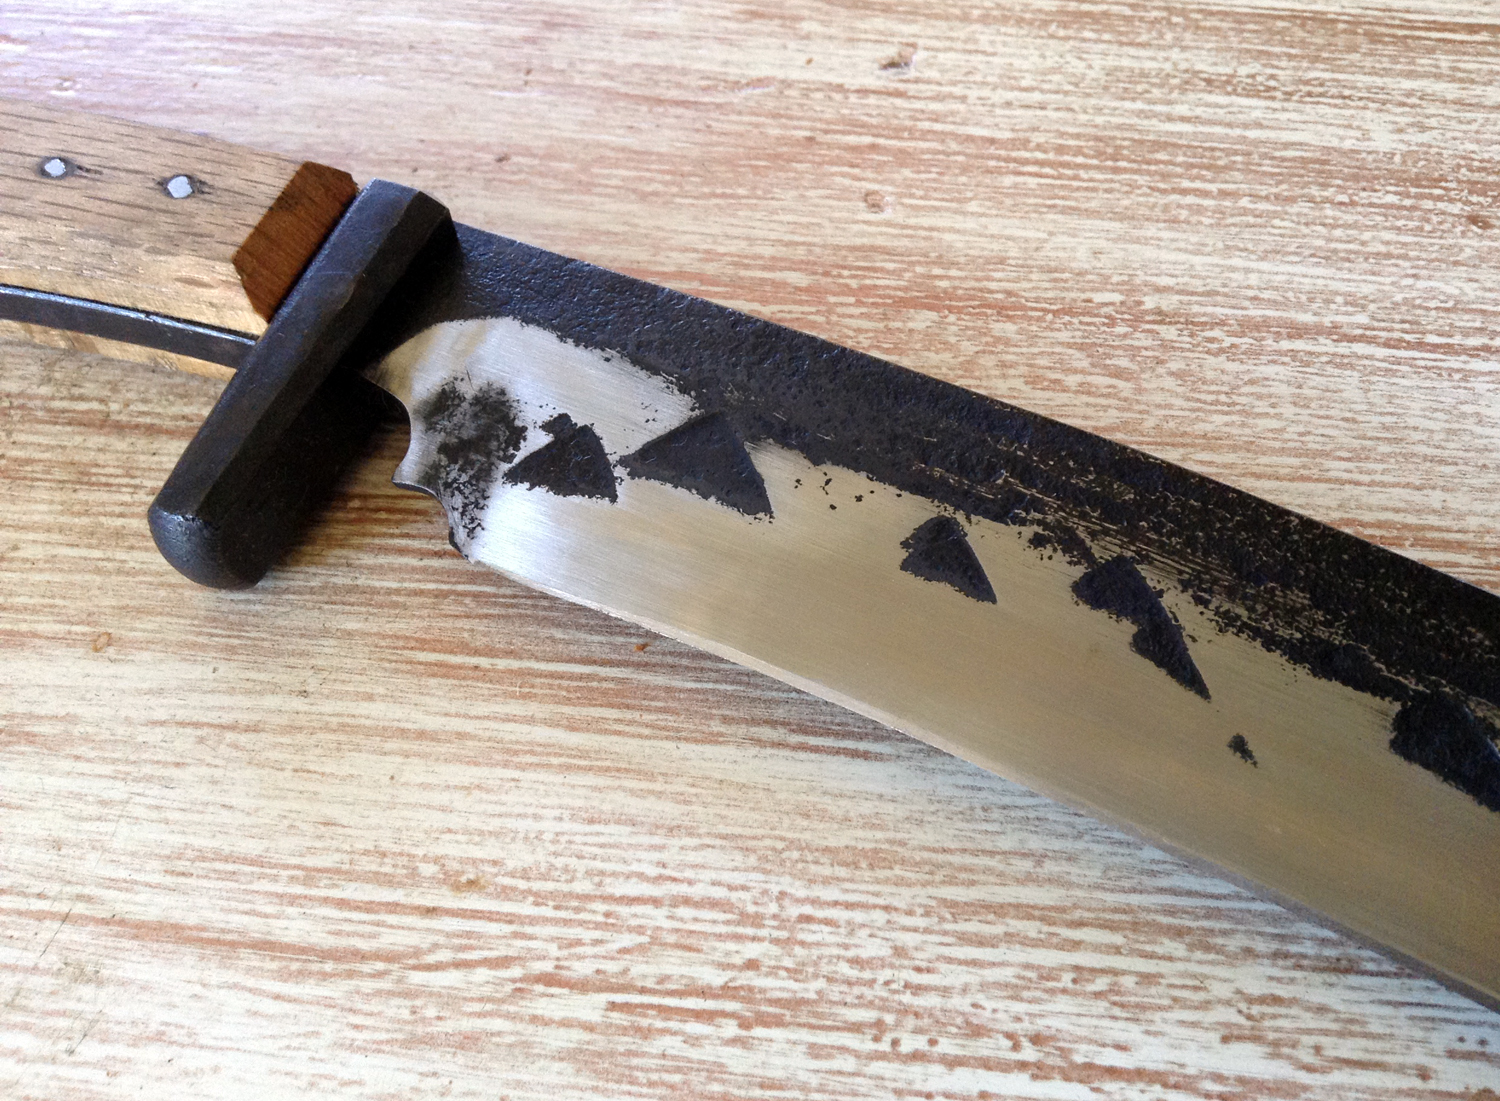  tanto-kukri-bowie knife, steel, tool steel, wood, 2014 